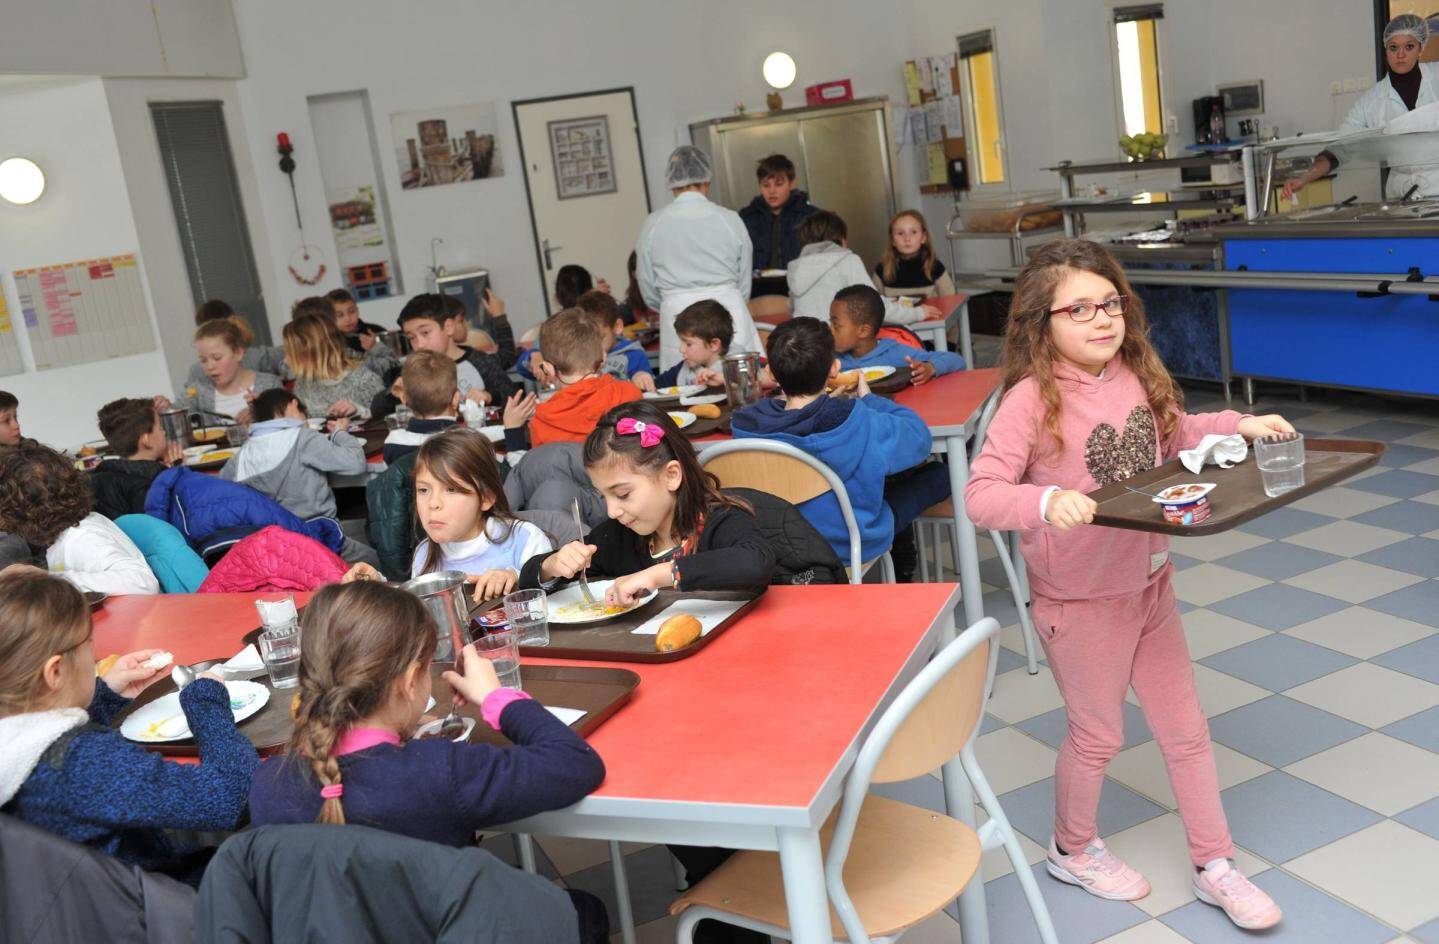 Le self de l'école des Arènes dirigée par Pascale Arzilli (238 enfants, 10 classes) est convivial, chaleureux, avec une salle pas trop grande et lumineuse.